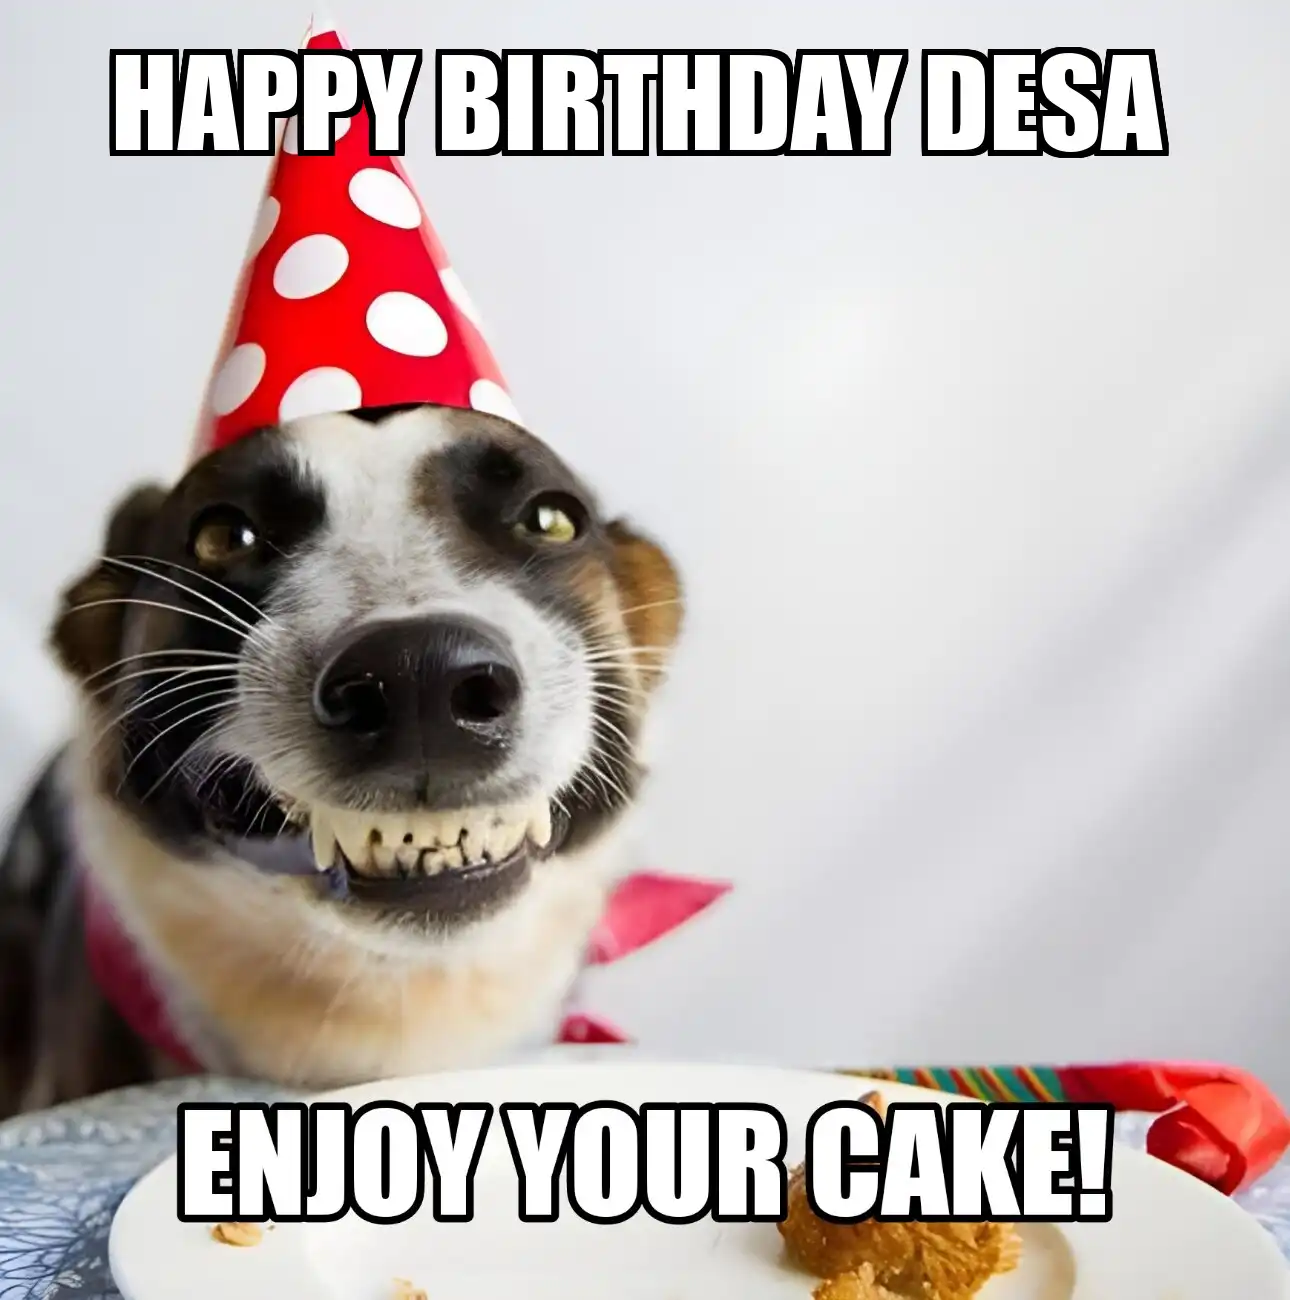 Happy Birthday Desa Enjoy Your Cake Dog Meme